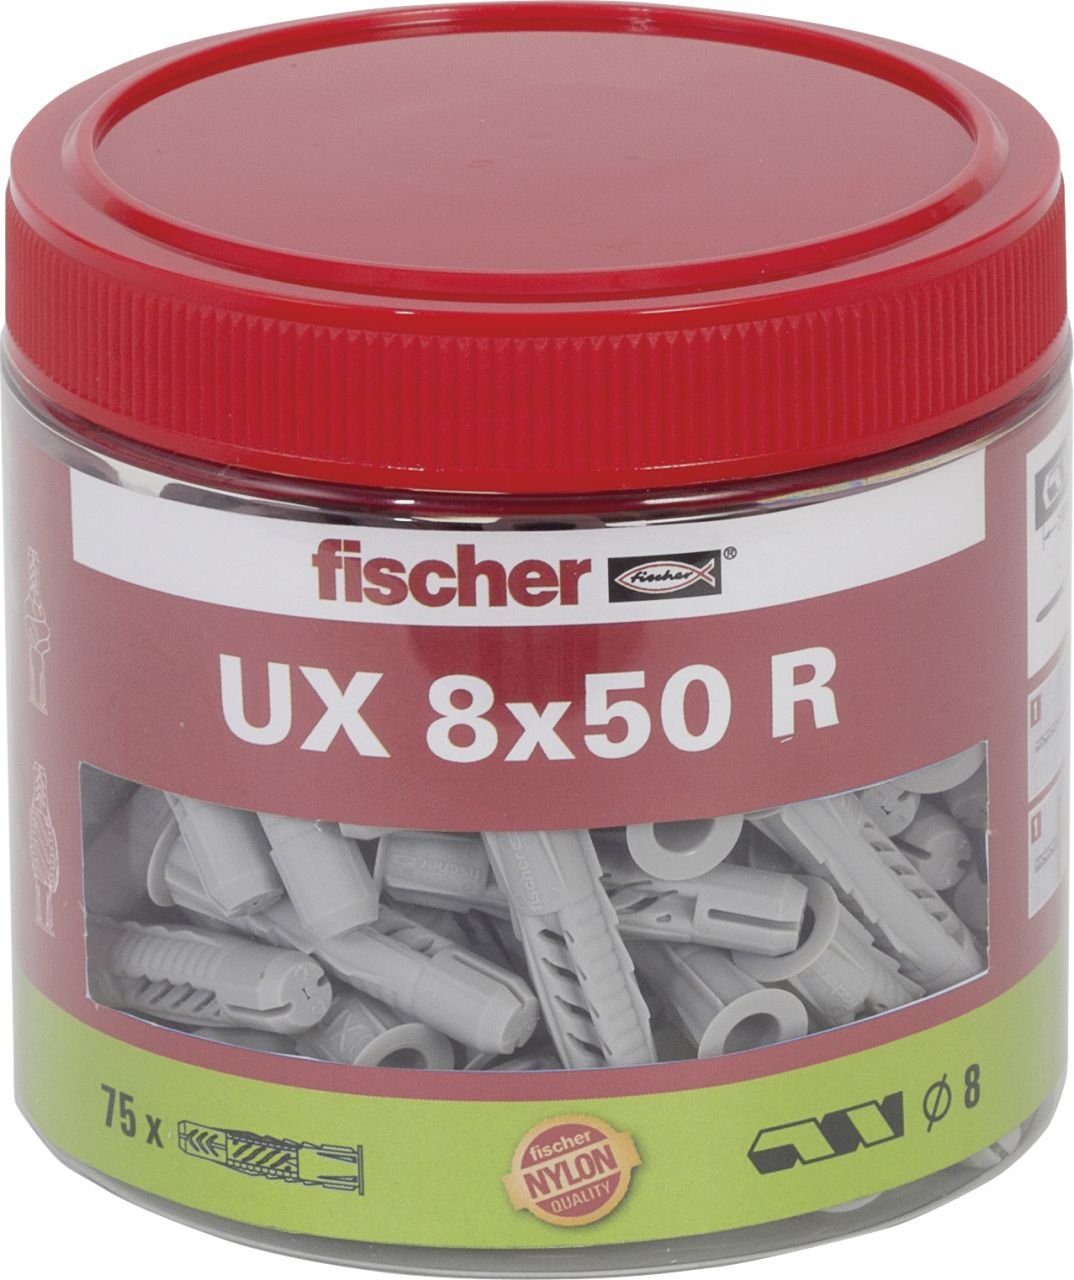 Fischer Befestigungstechnik fischer Schrauben- und Dübel-Set Fischer Universaldübel UX 8.0 x 50 mm - 75 Stück | Schrauben-Dübel-Sets